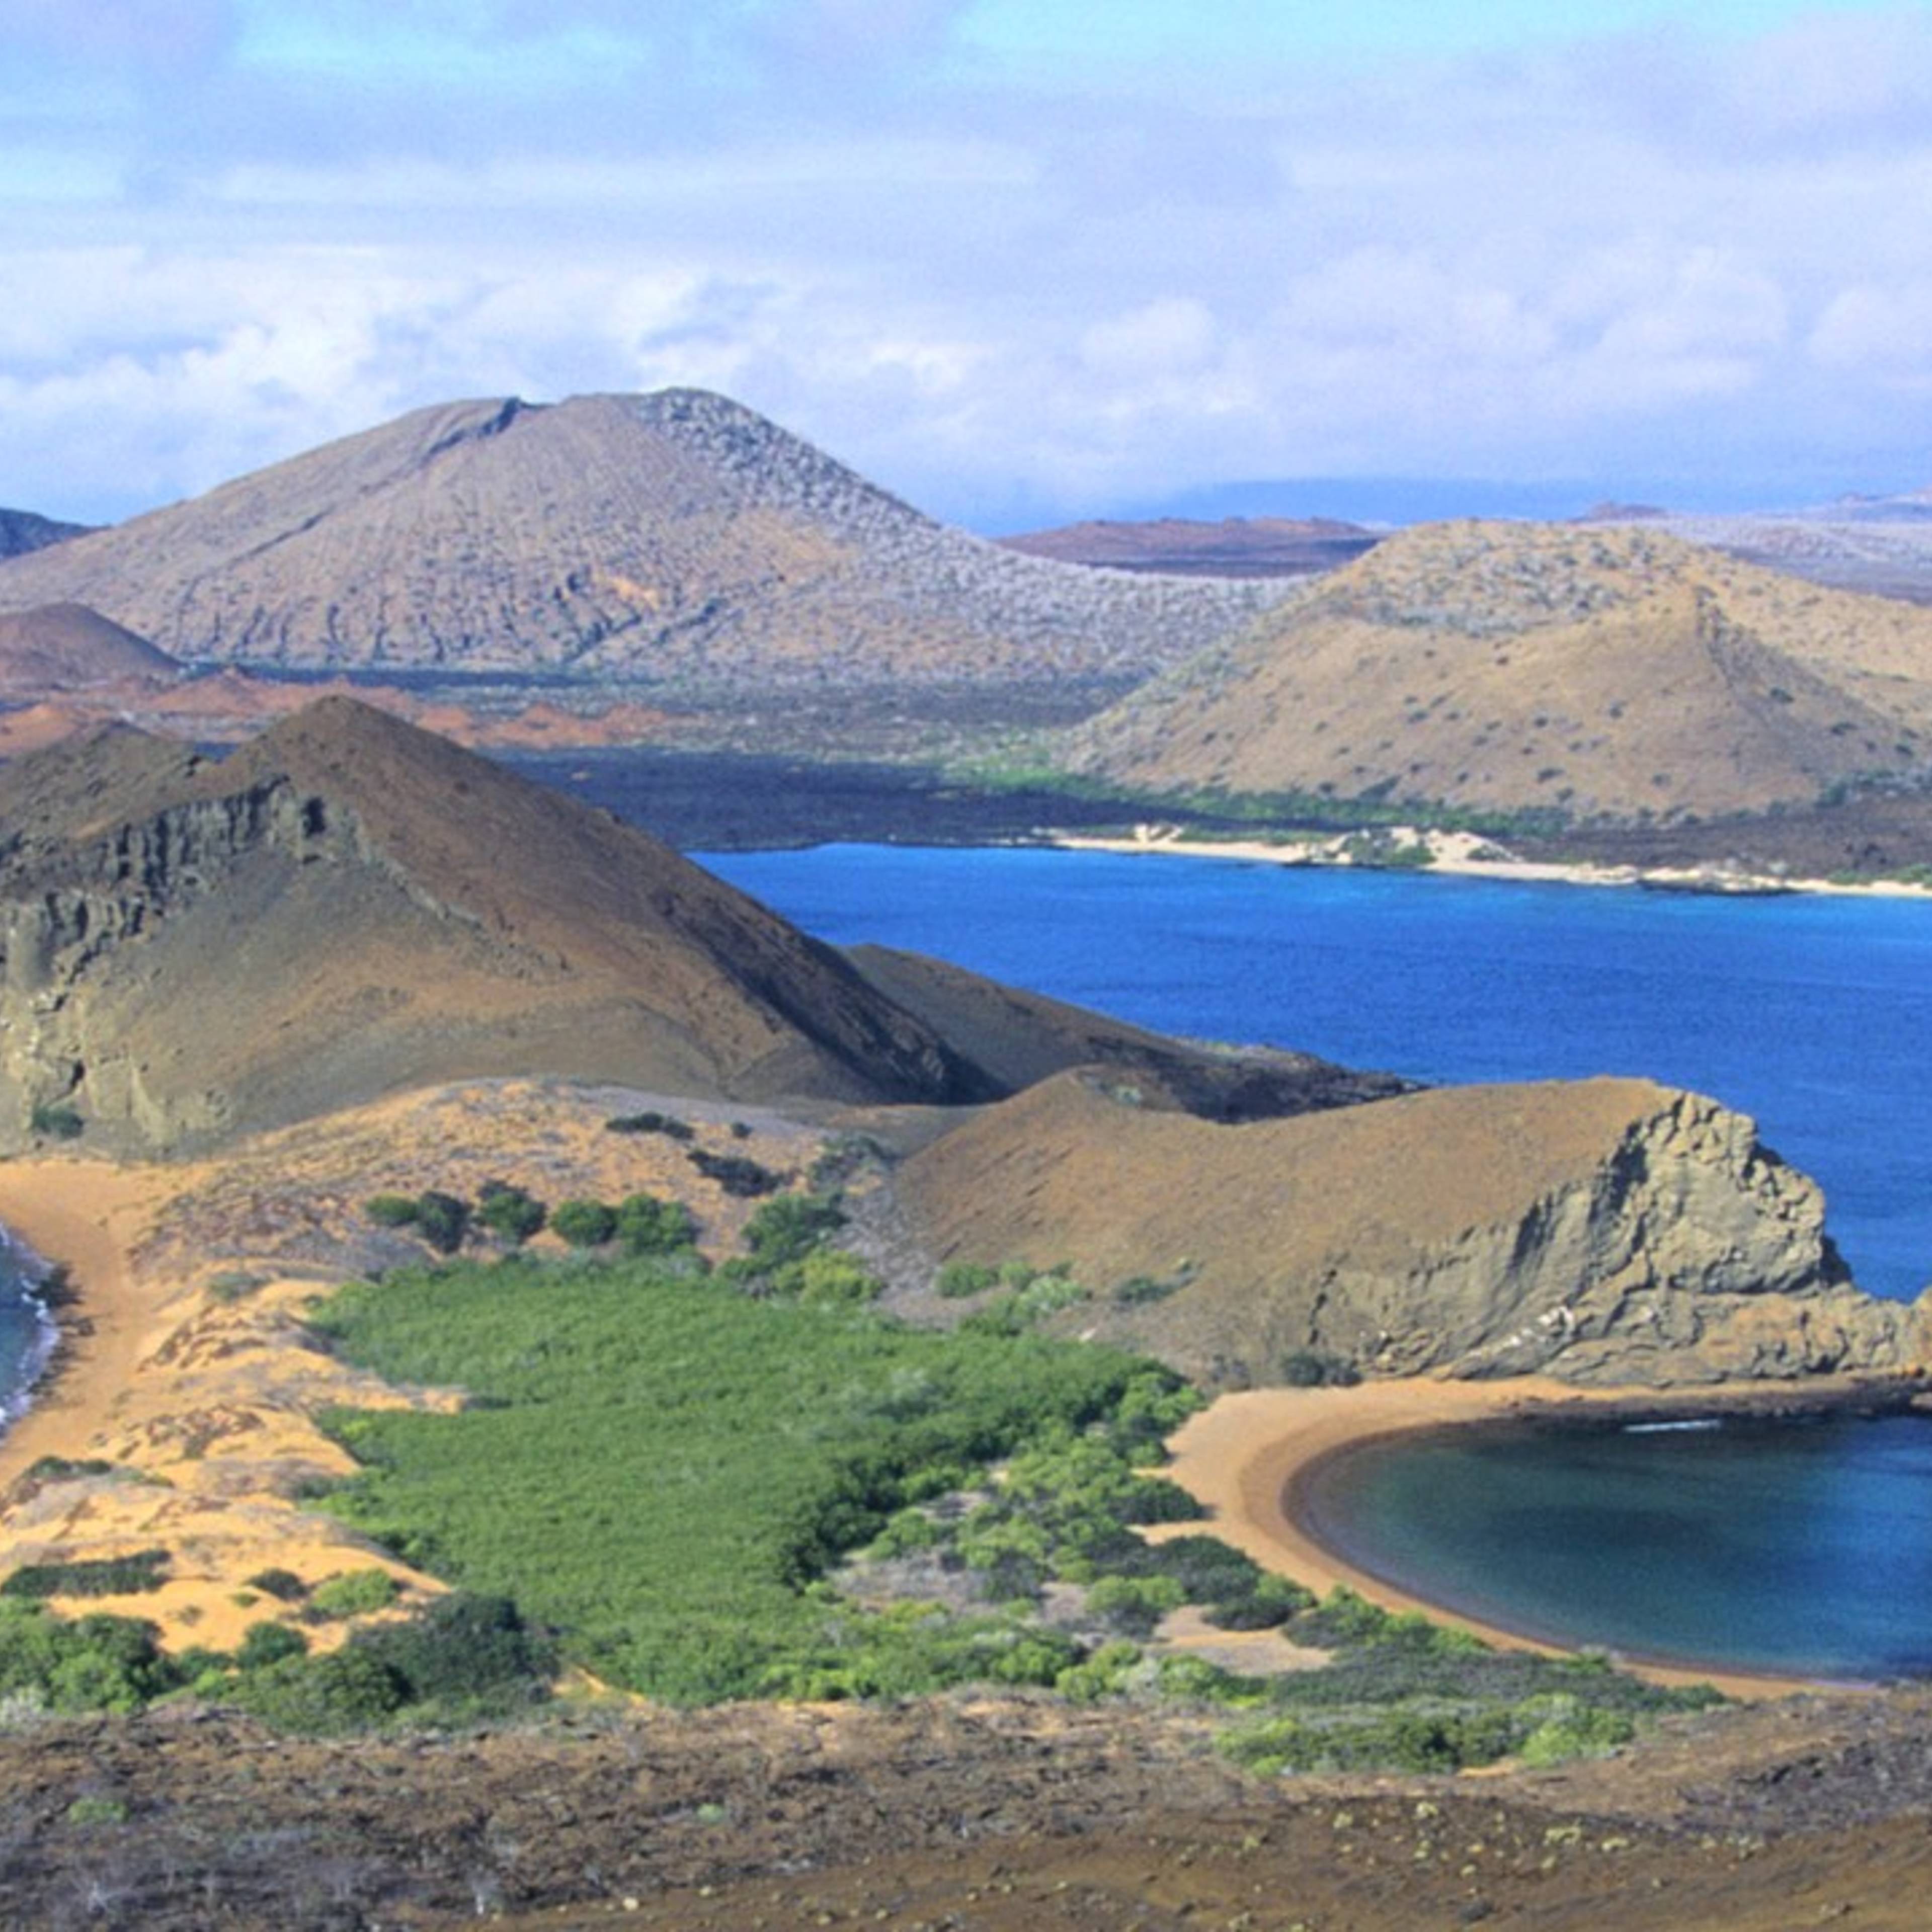 Crea il tuo viaggio alle Isole Galapagos in autunno, 100% su misura